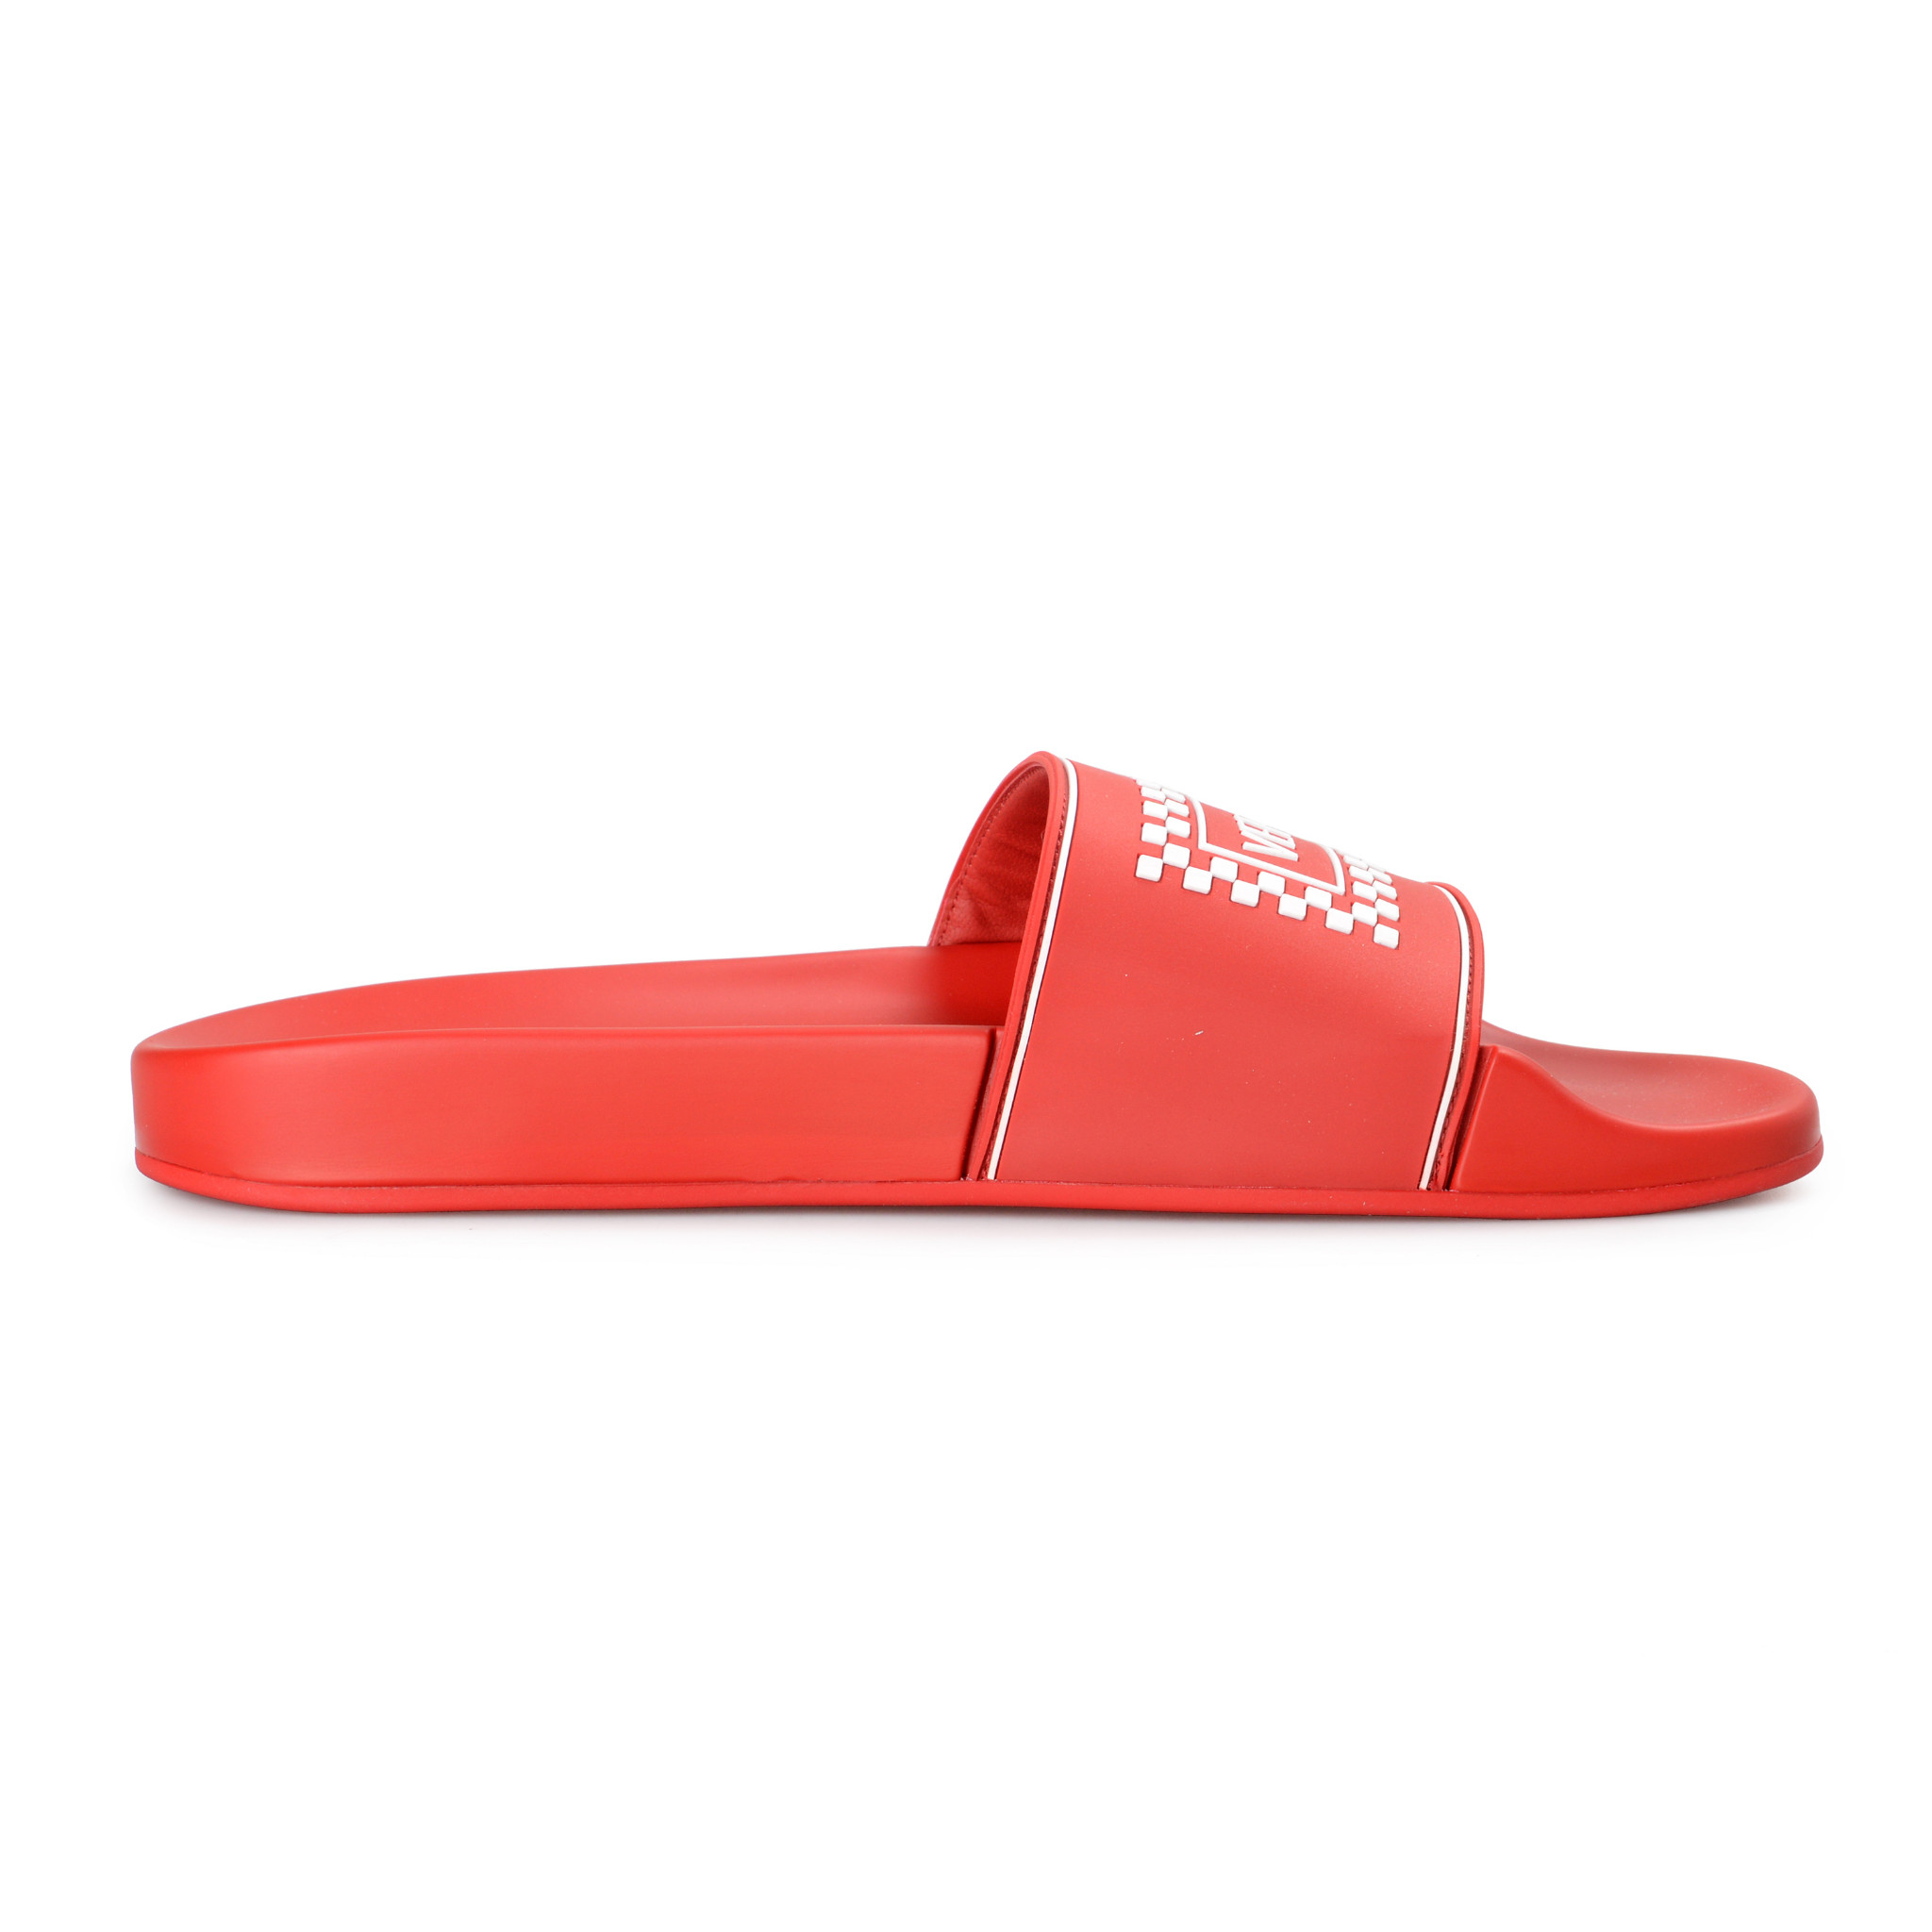 Versace Men's Bright Red Logo Print Rubber Flip Flops Shoes US 8 IT 41 ...